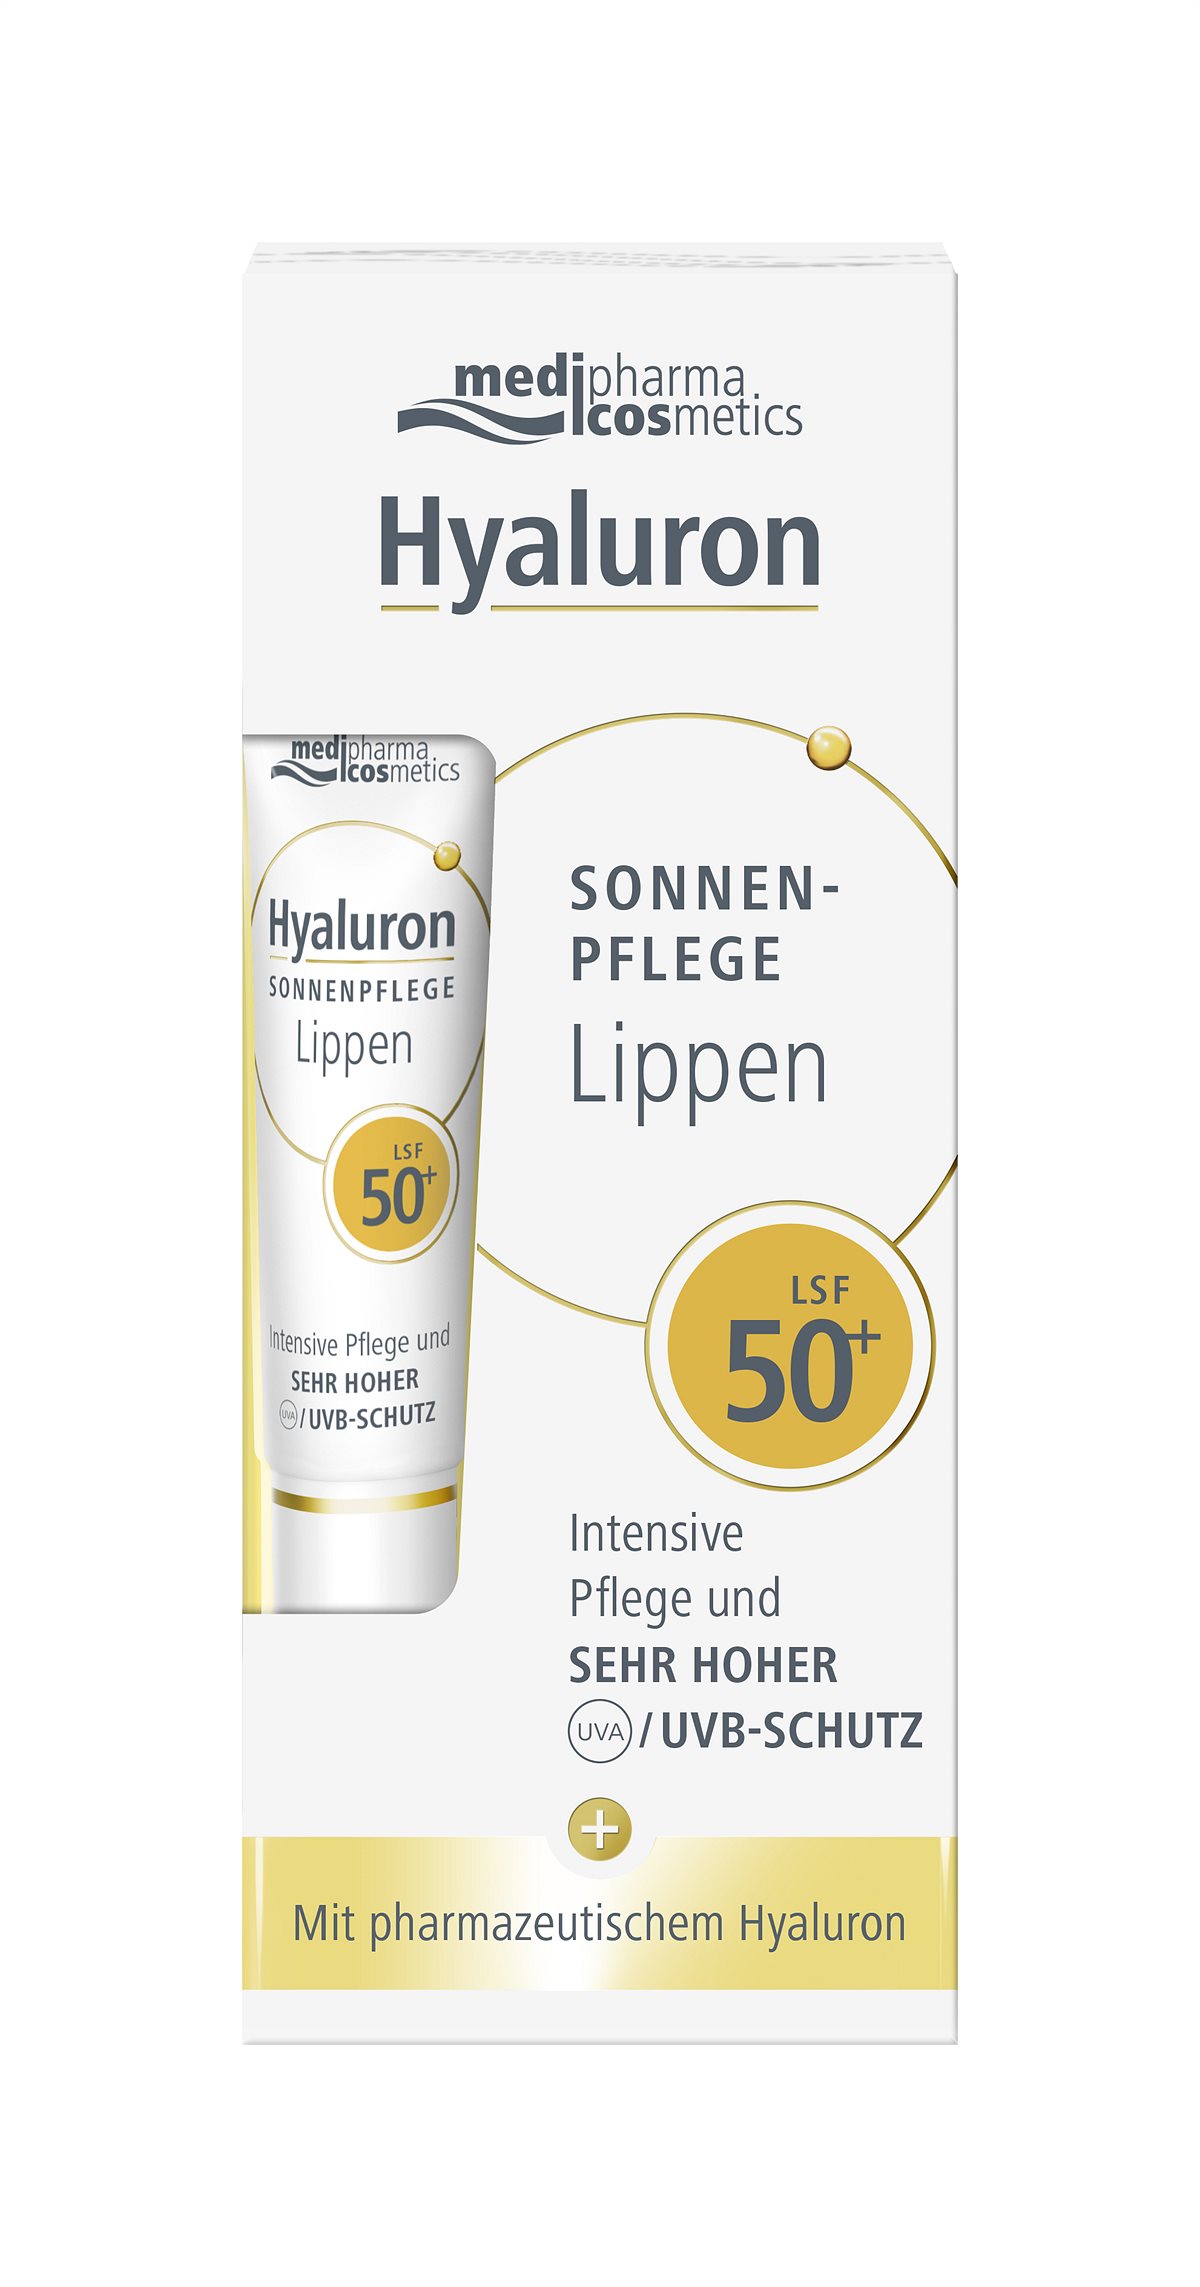 medipharma cosmetics Hyaluron SONNENPFLEGE Lippen 50 Box